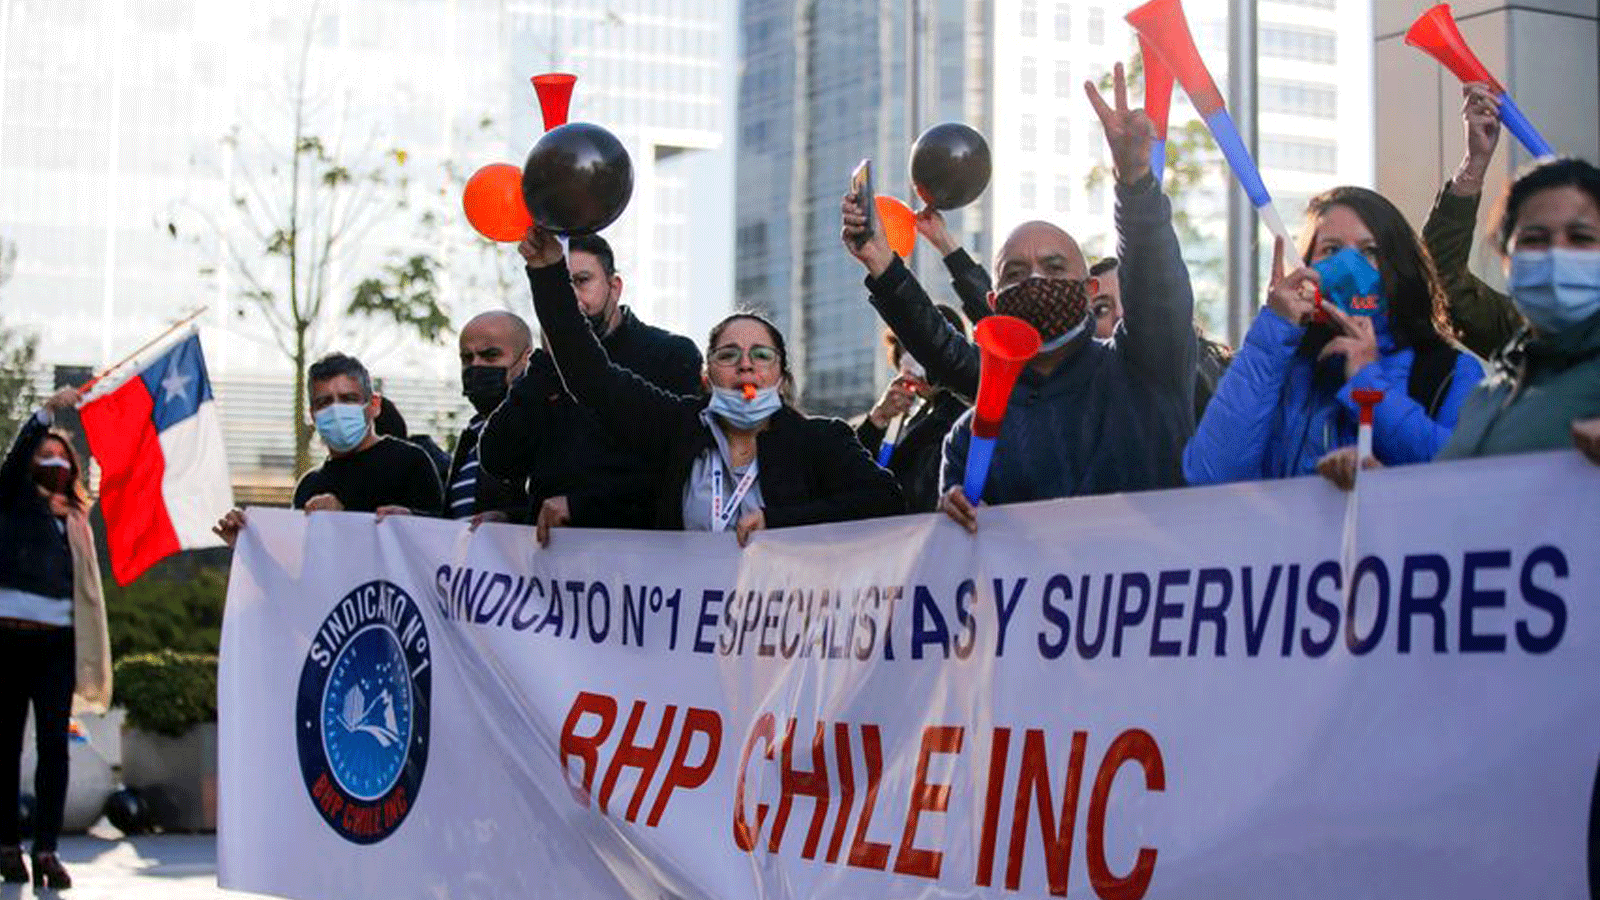 عمال منجم النحاس La Escondida يحتجون خارج مكاتب BHP في سانتياغو ، تشيلي في أيار/مايو 2021 